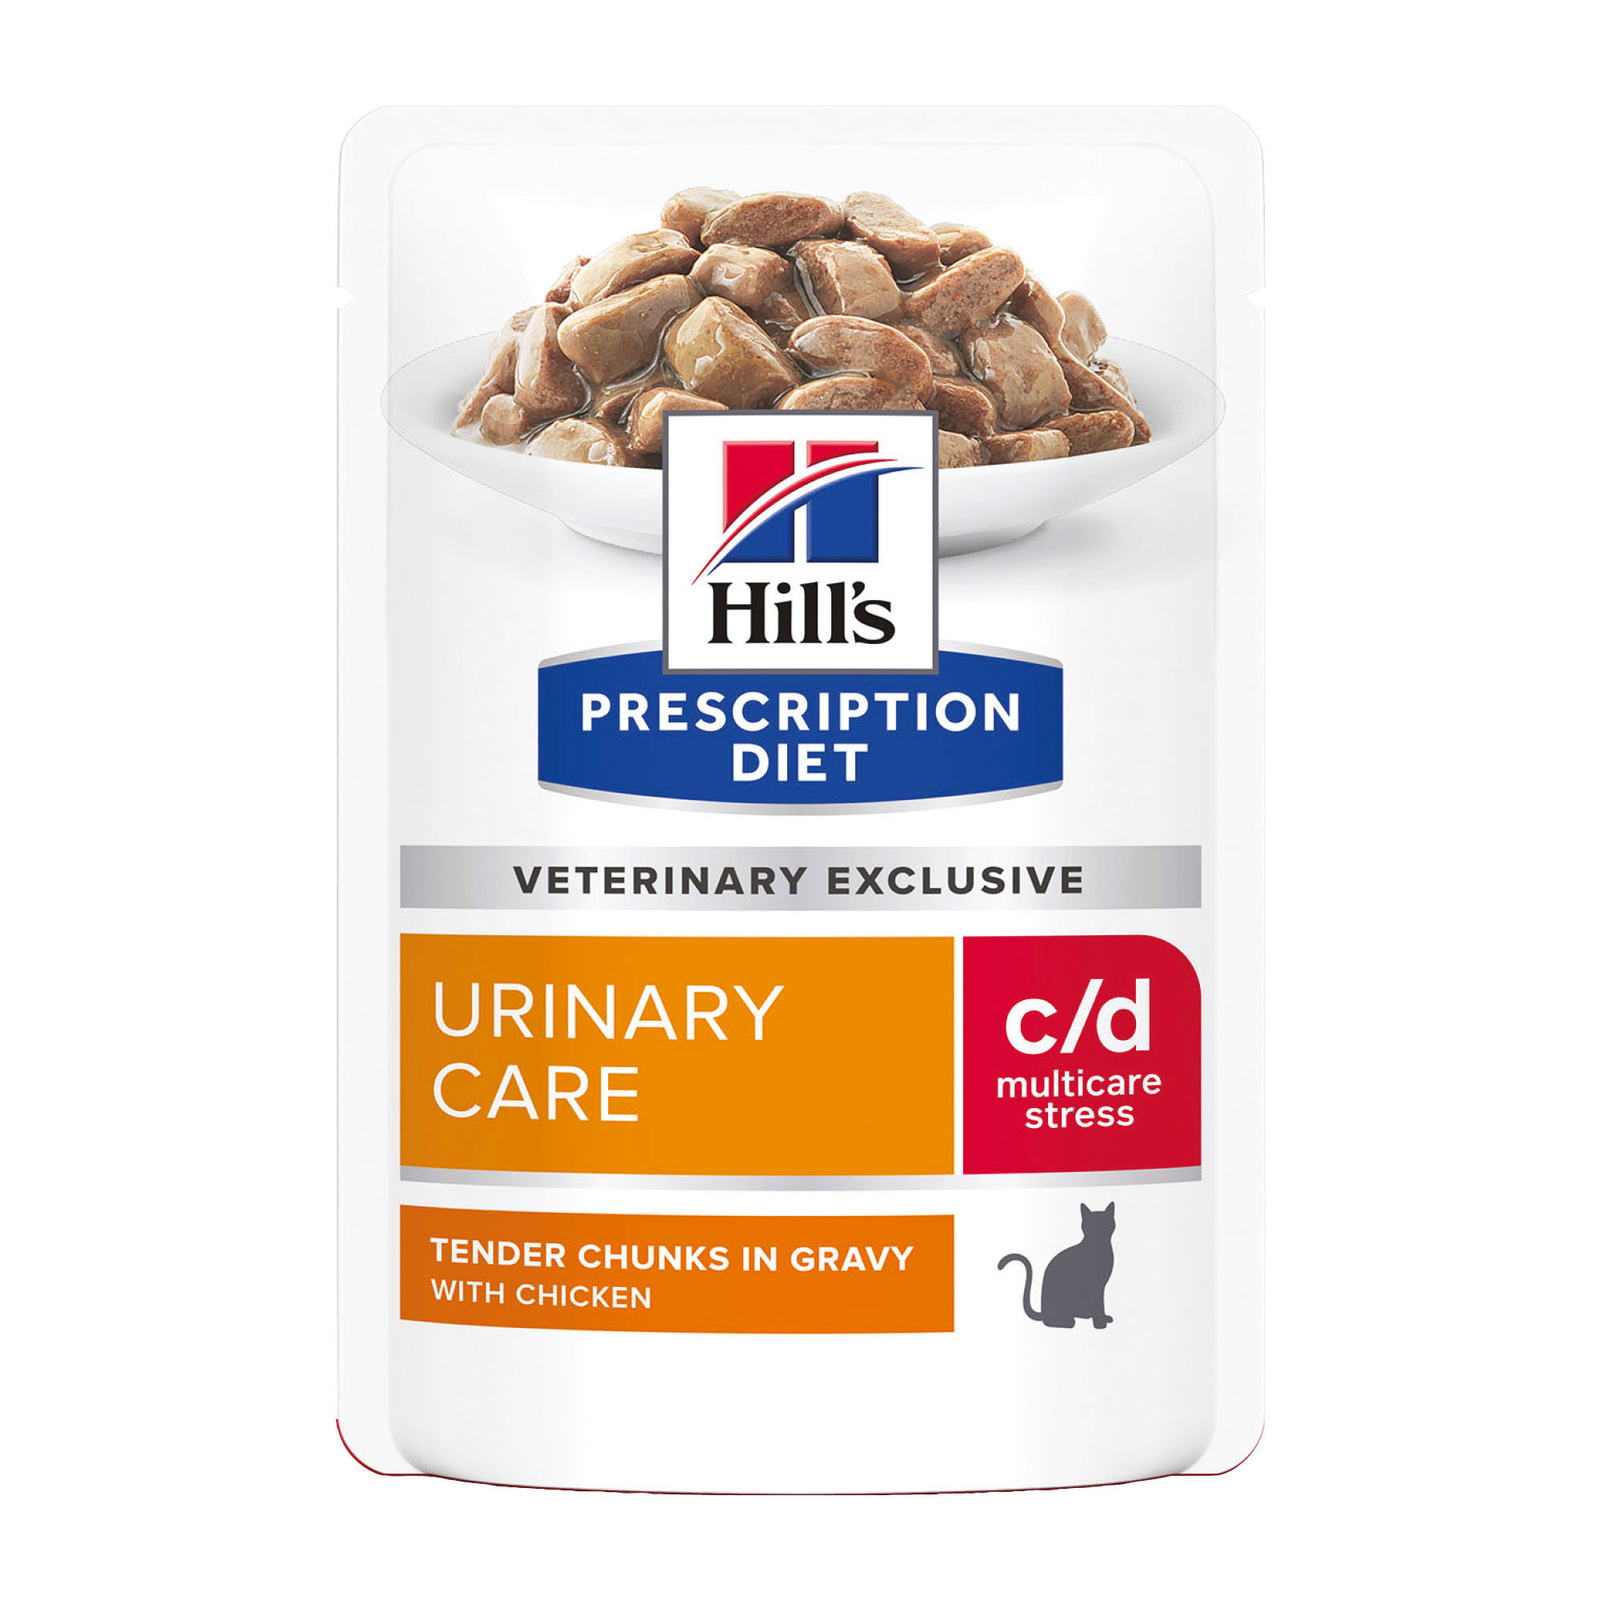 Hill's вет.консервы влажный диетический корм для кошек c/d Multicare Urinary Stress при профилактике цистита и мочекаменной болезни (мкб), в том числе вызванные стрессом, с курицей (1,02 кг) Hill's вет.консервы влажный диетический корм для кошек c/d Multicare Urinary Stress при профилактике - фото 1